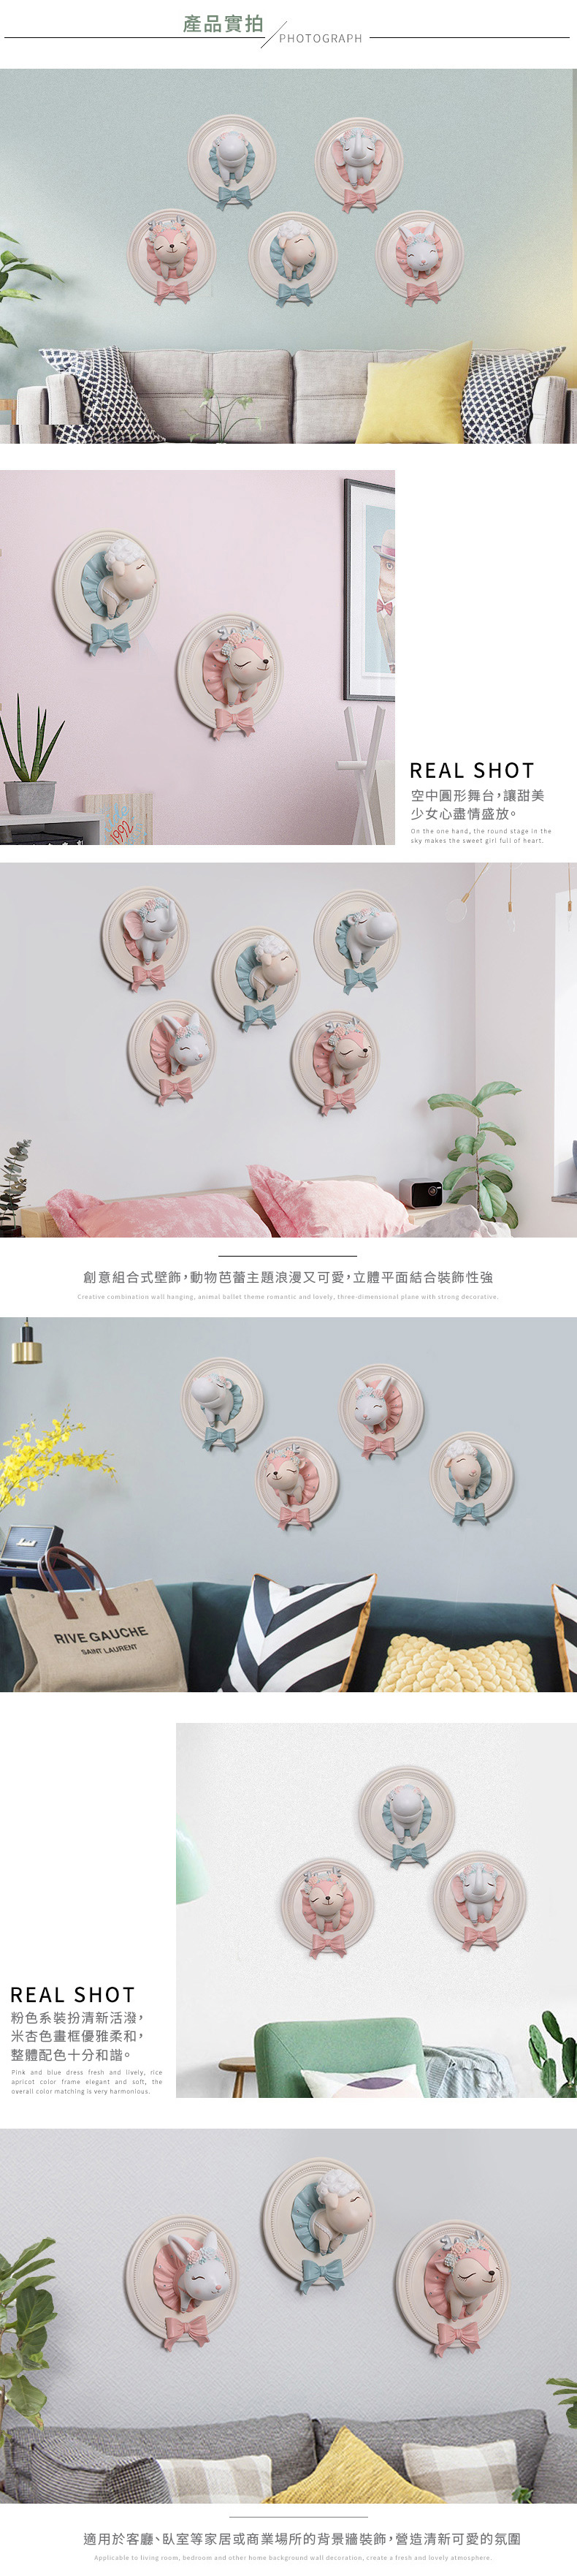 家居生活雜貨舖 夢幻粉嫩小動物空中芭蕾立體壁飾 粉紅花鹿